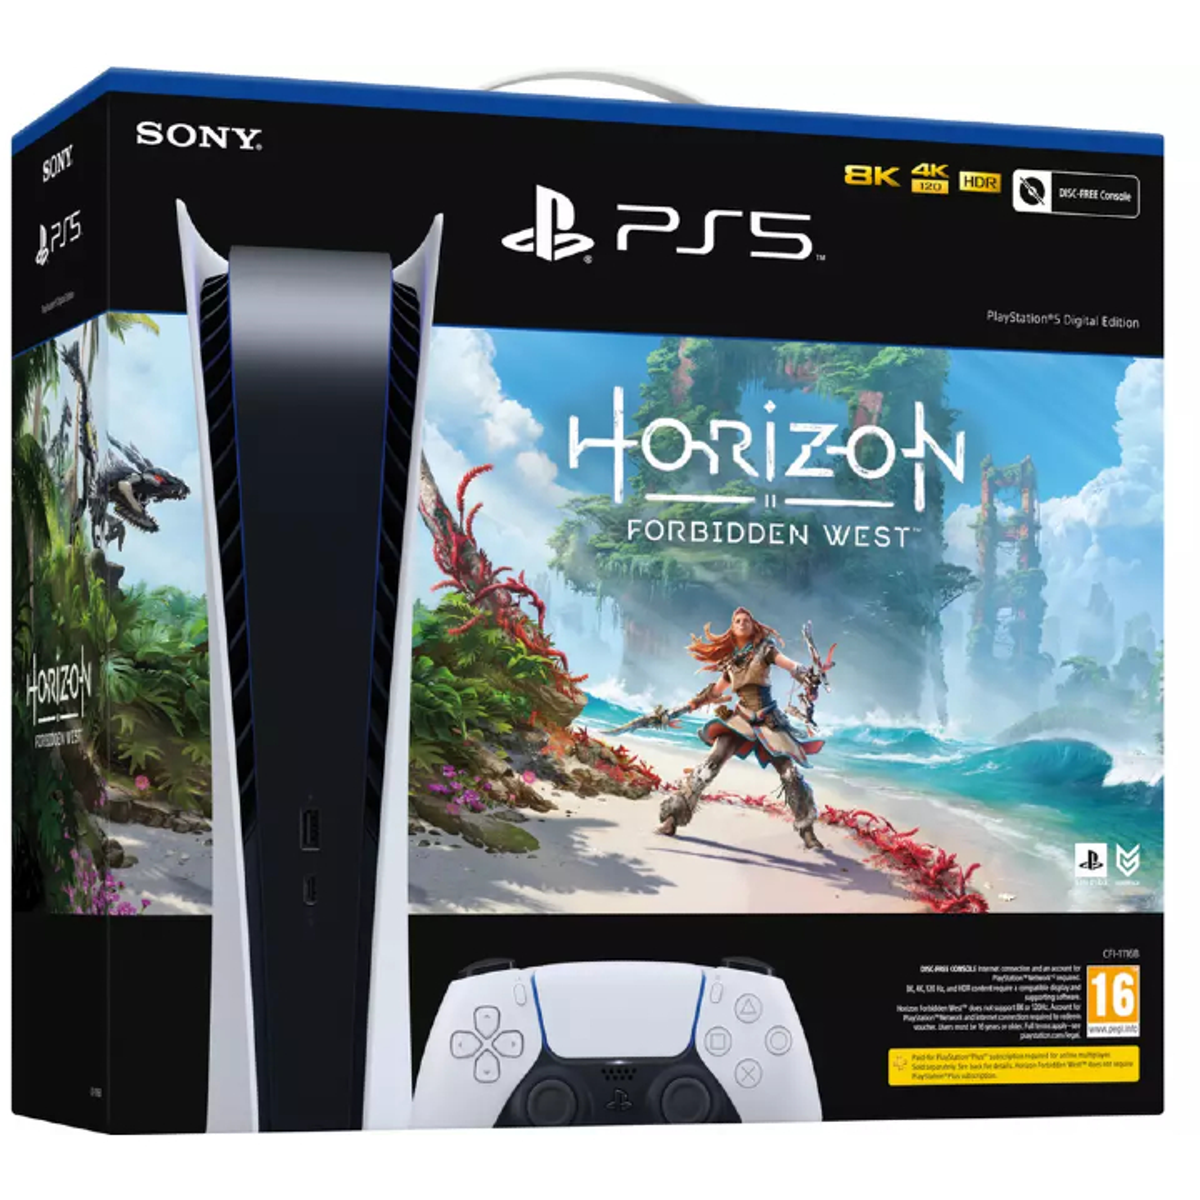 PS5 Horizon Forbidden West Bundle Is in Stock Now - IGN